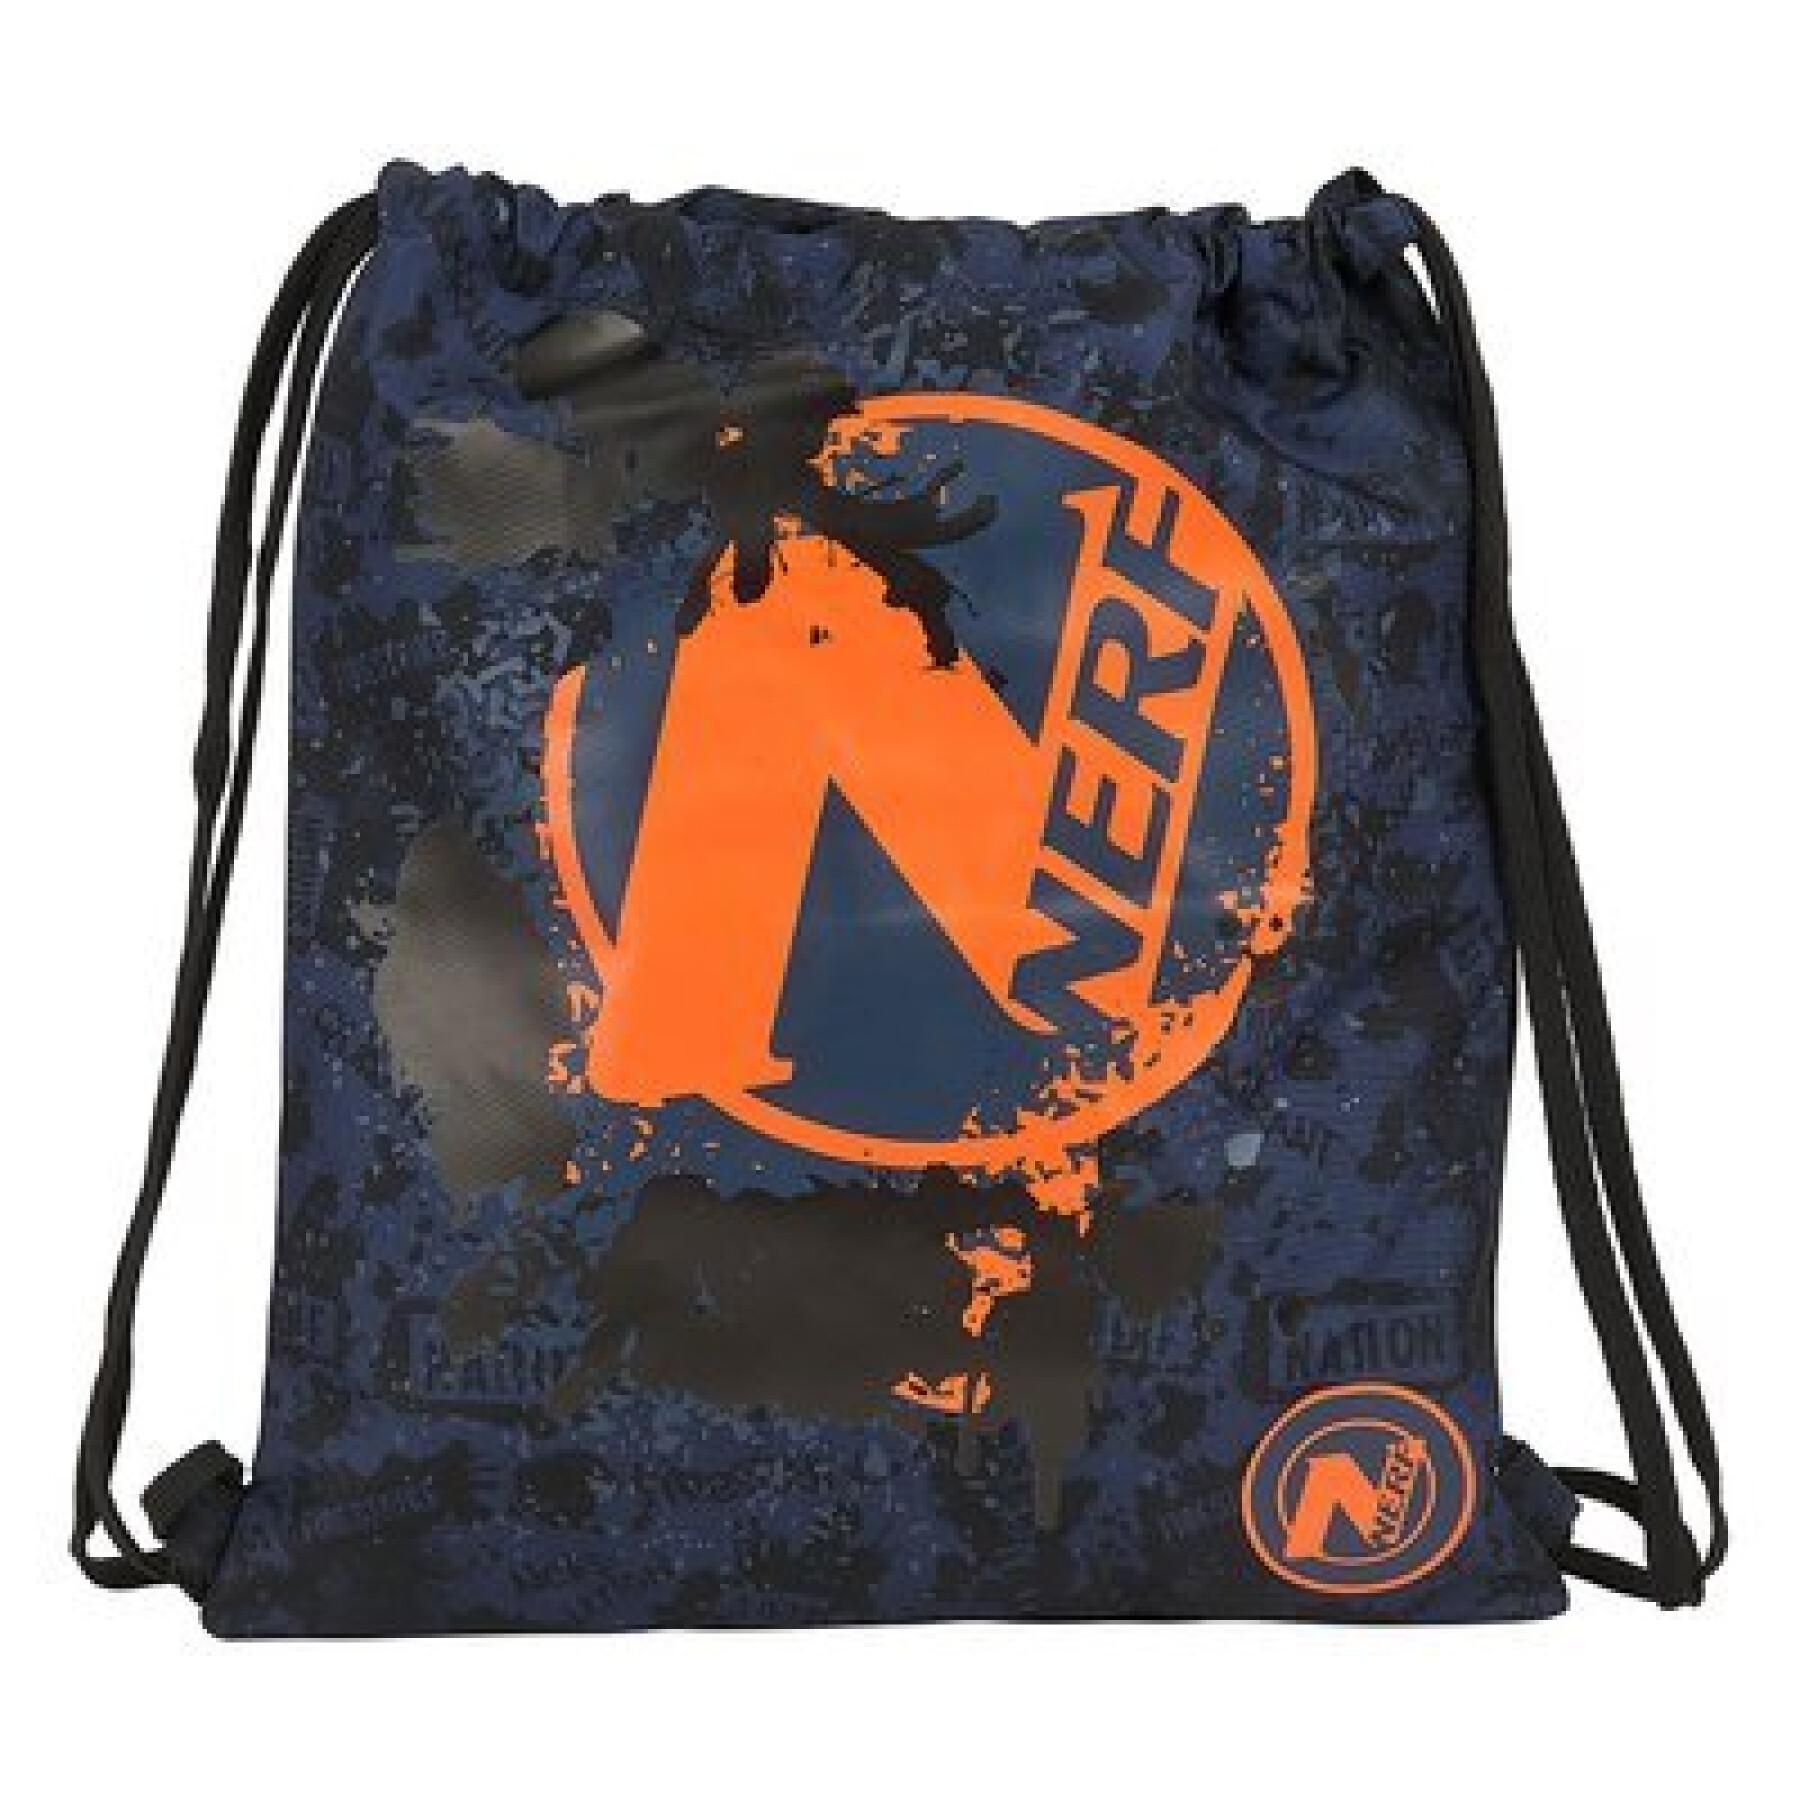 Children's sports bag Nerf